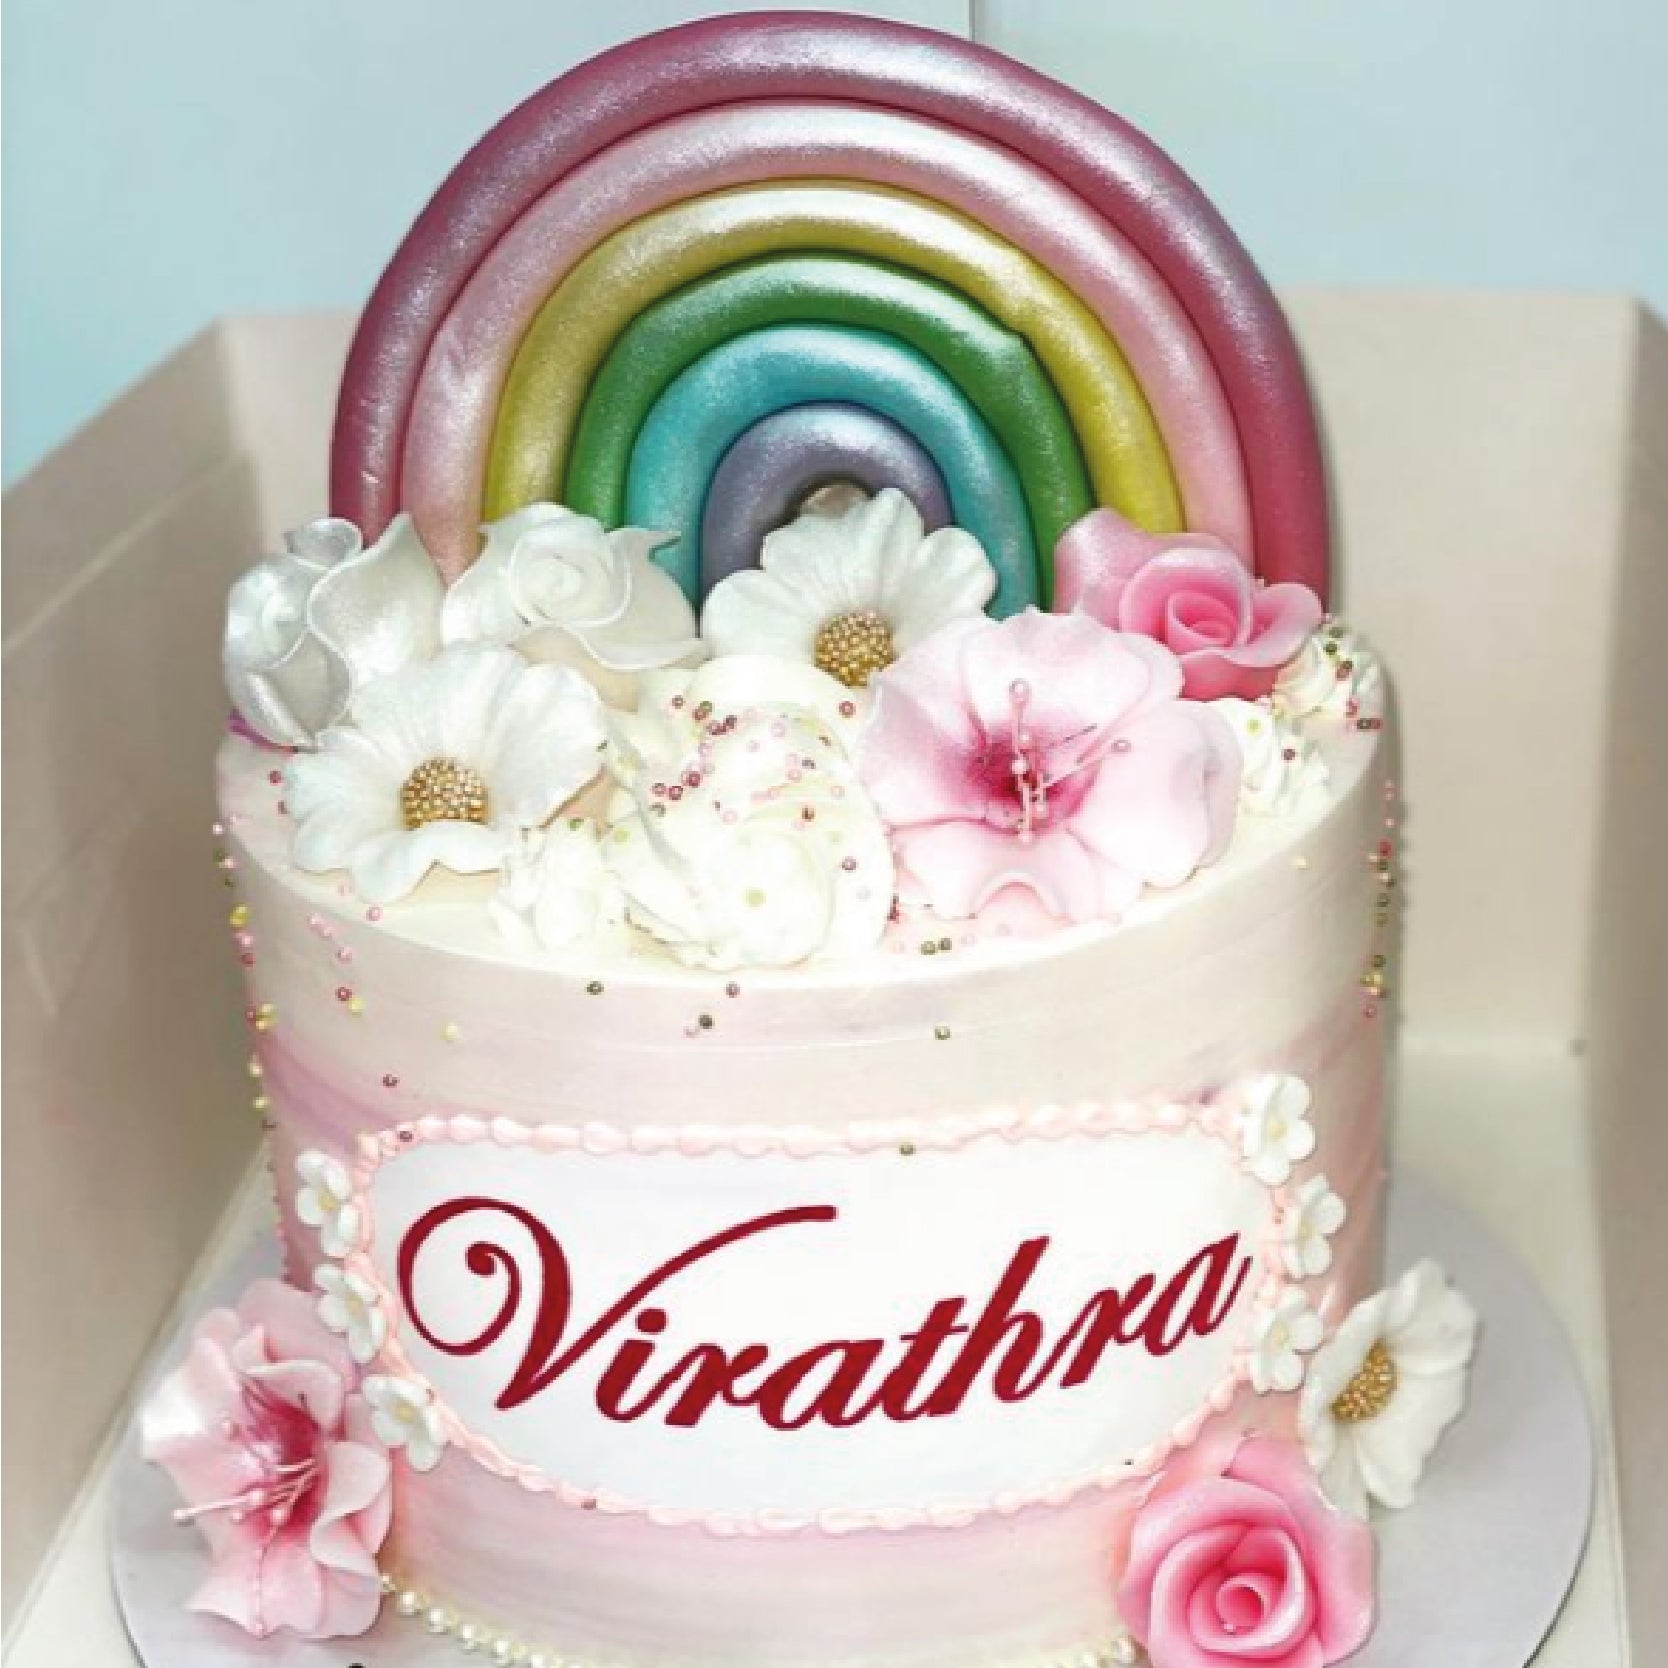 Rainbow Fresh Cream Cake